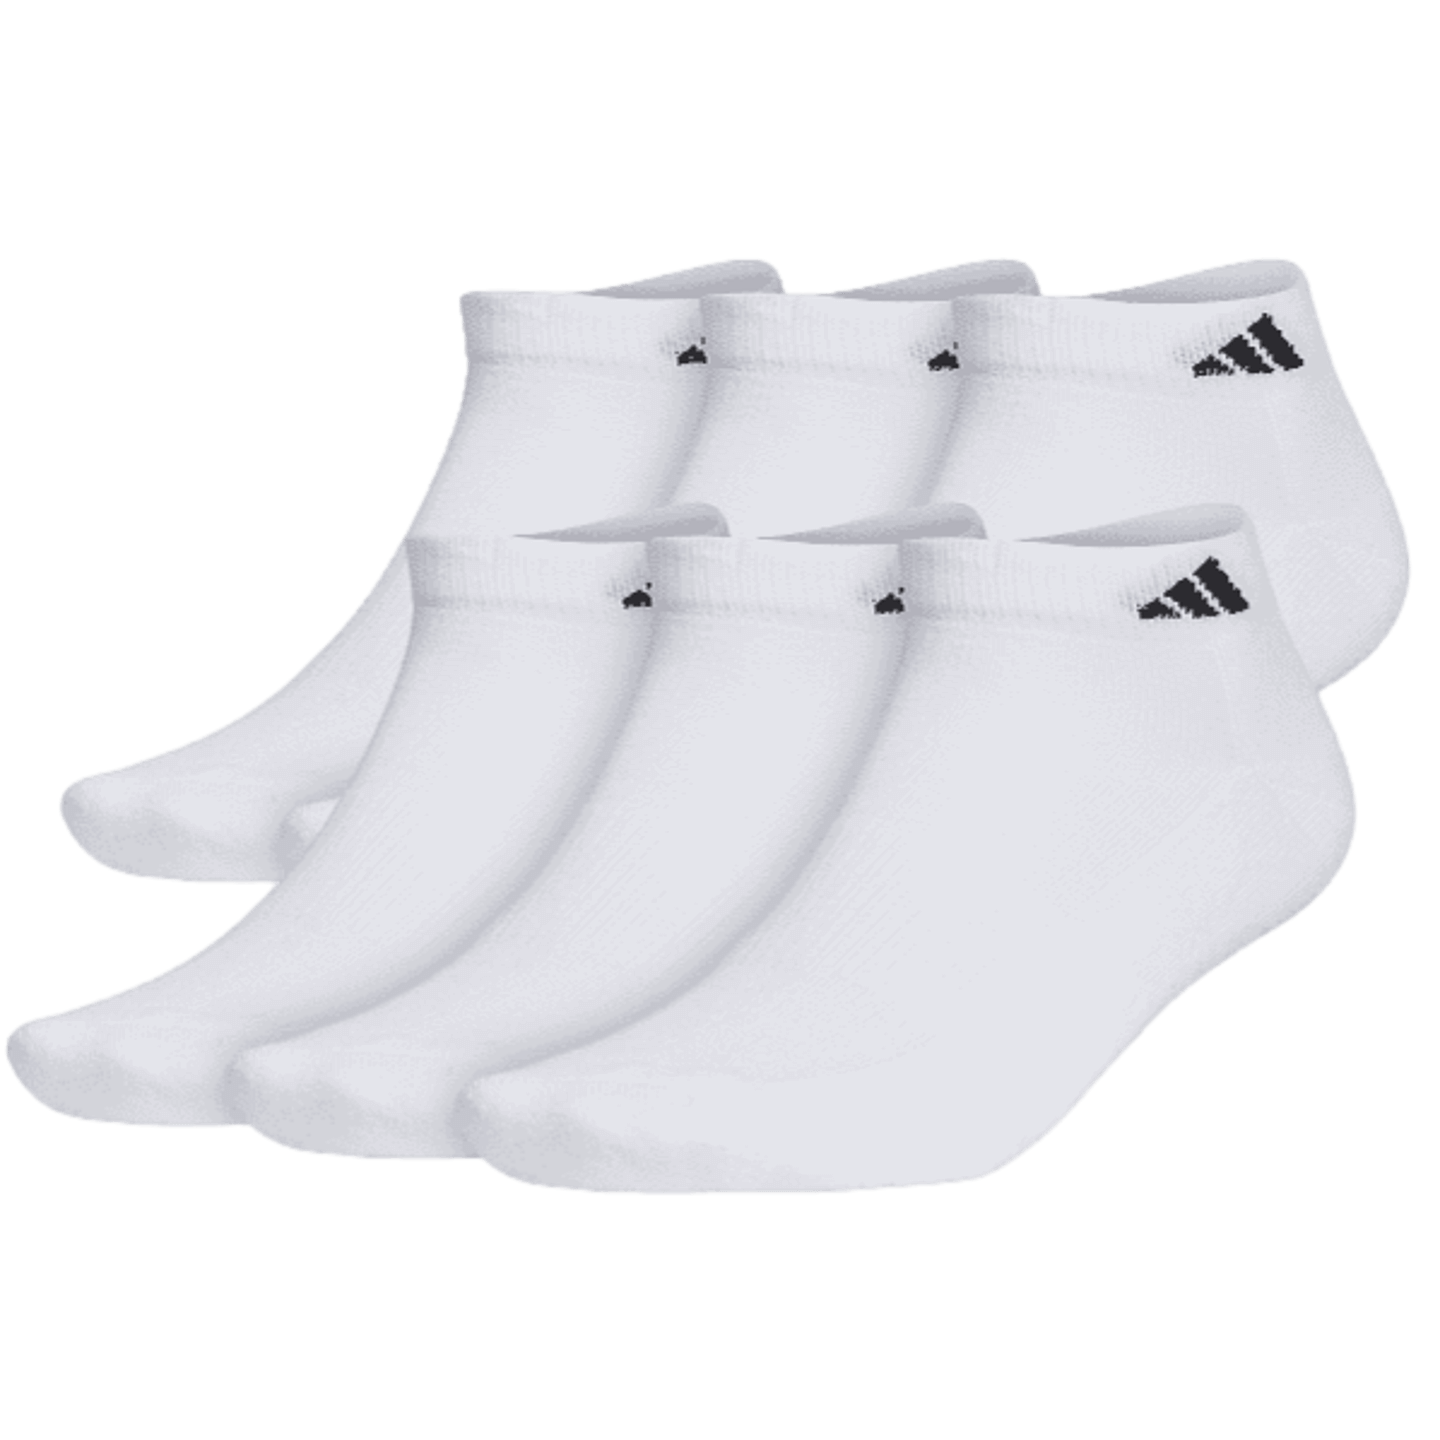 Calcetines deportivos acolchados de corte bajo Adidas (paq. de 6)